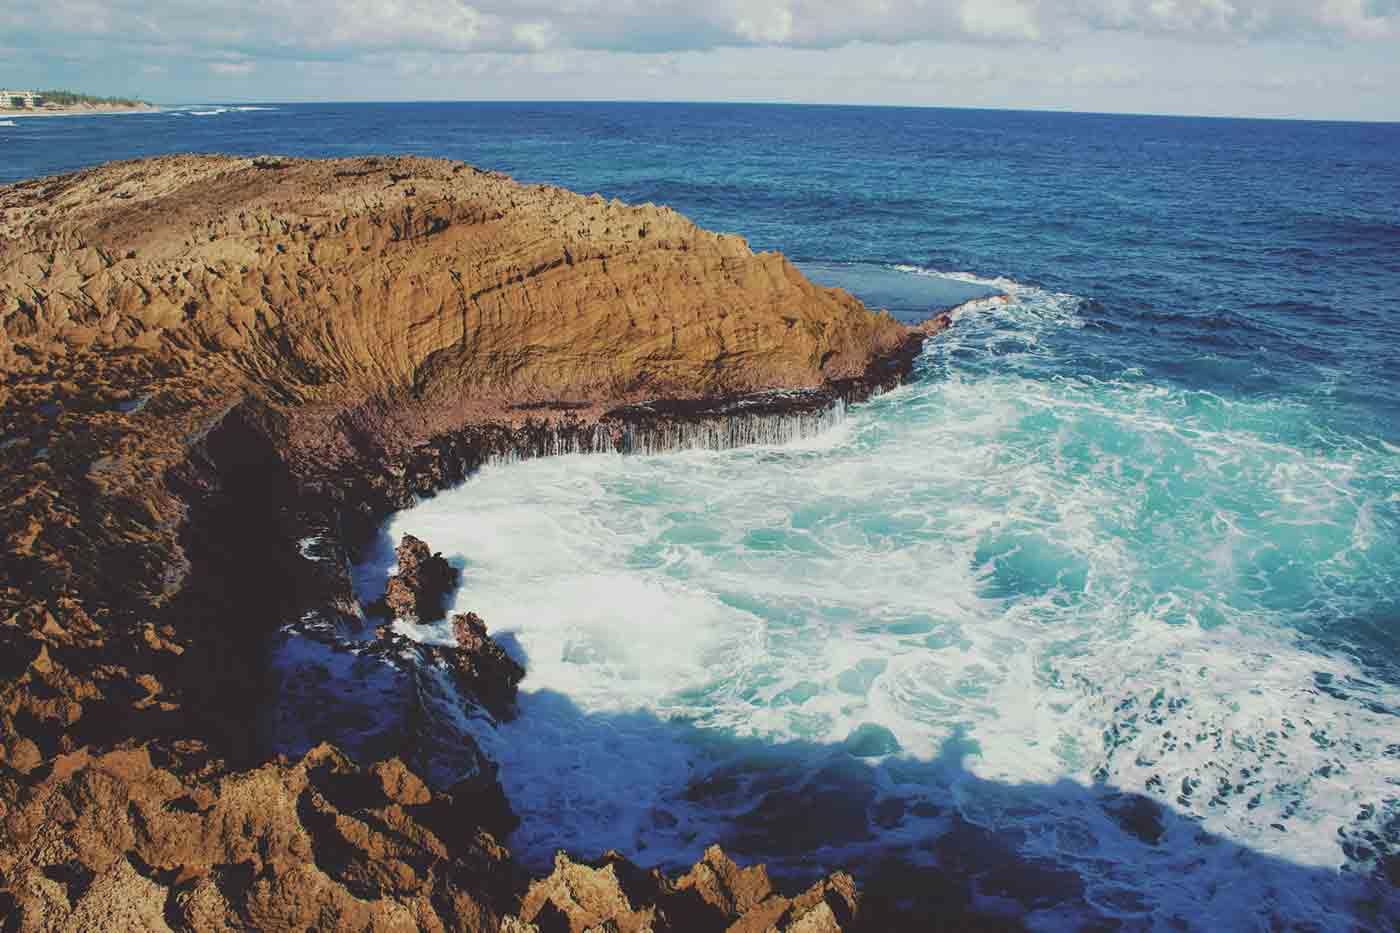 Ocean waves crashing into crevice in rocky shore